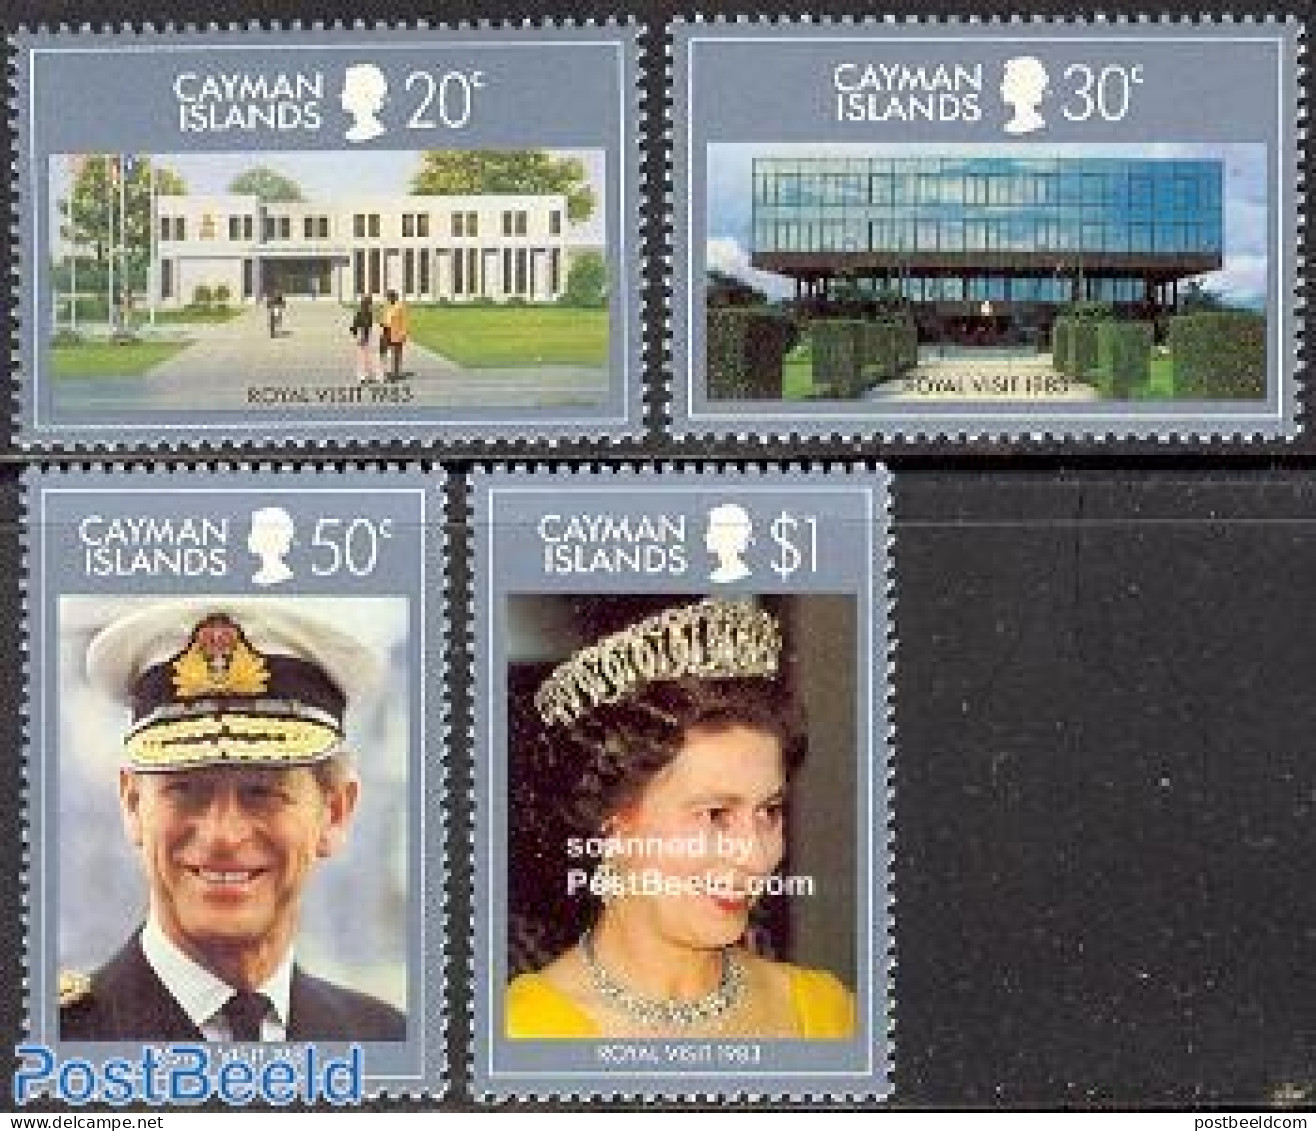 Cayman Islands 1983 Royal Visit 4v, Mint NH, History - Kings & Queens (Royalty) - Königshäuser, Adel